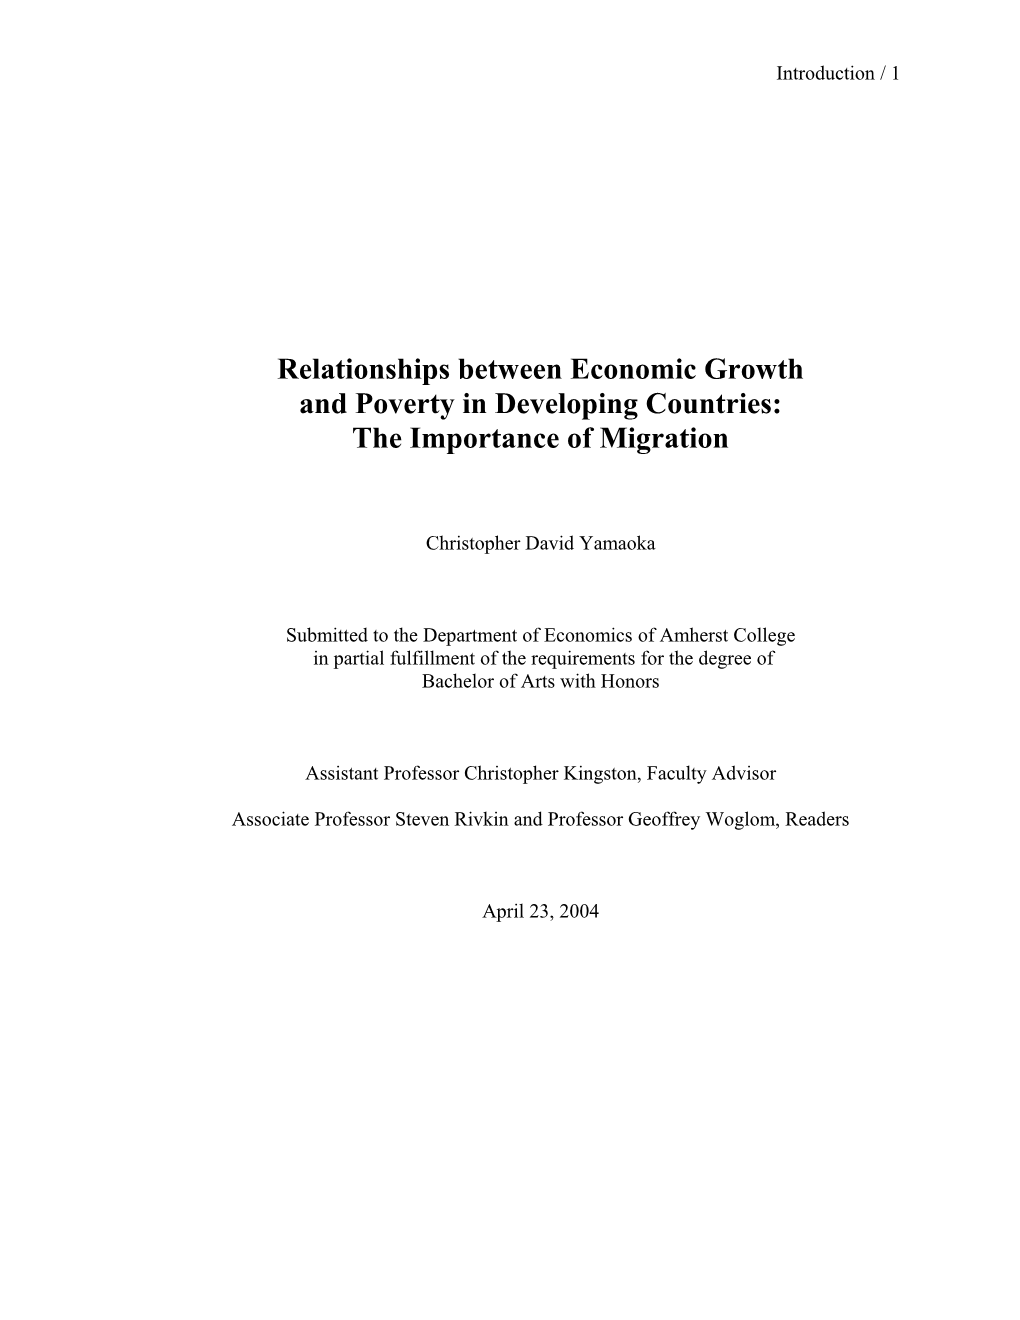 Relationships Between Economic Growth